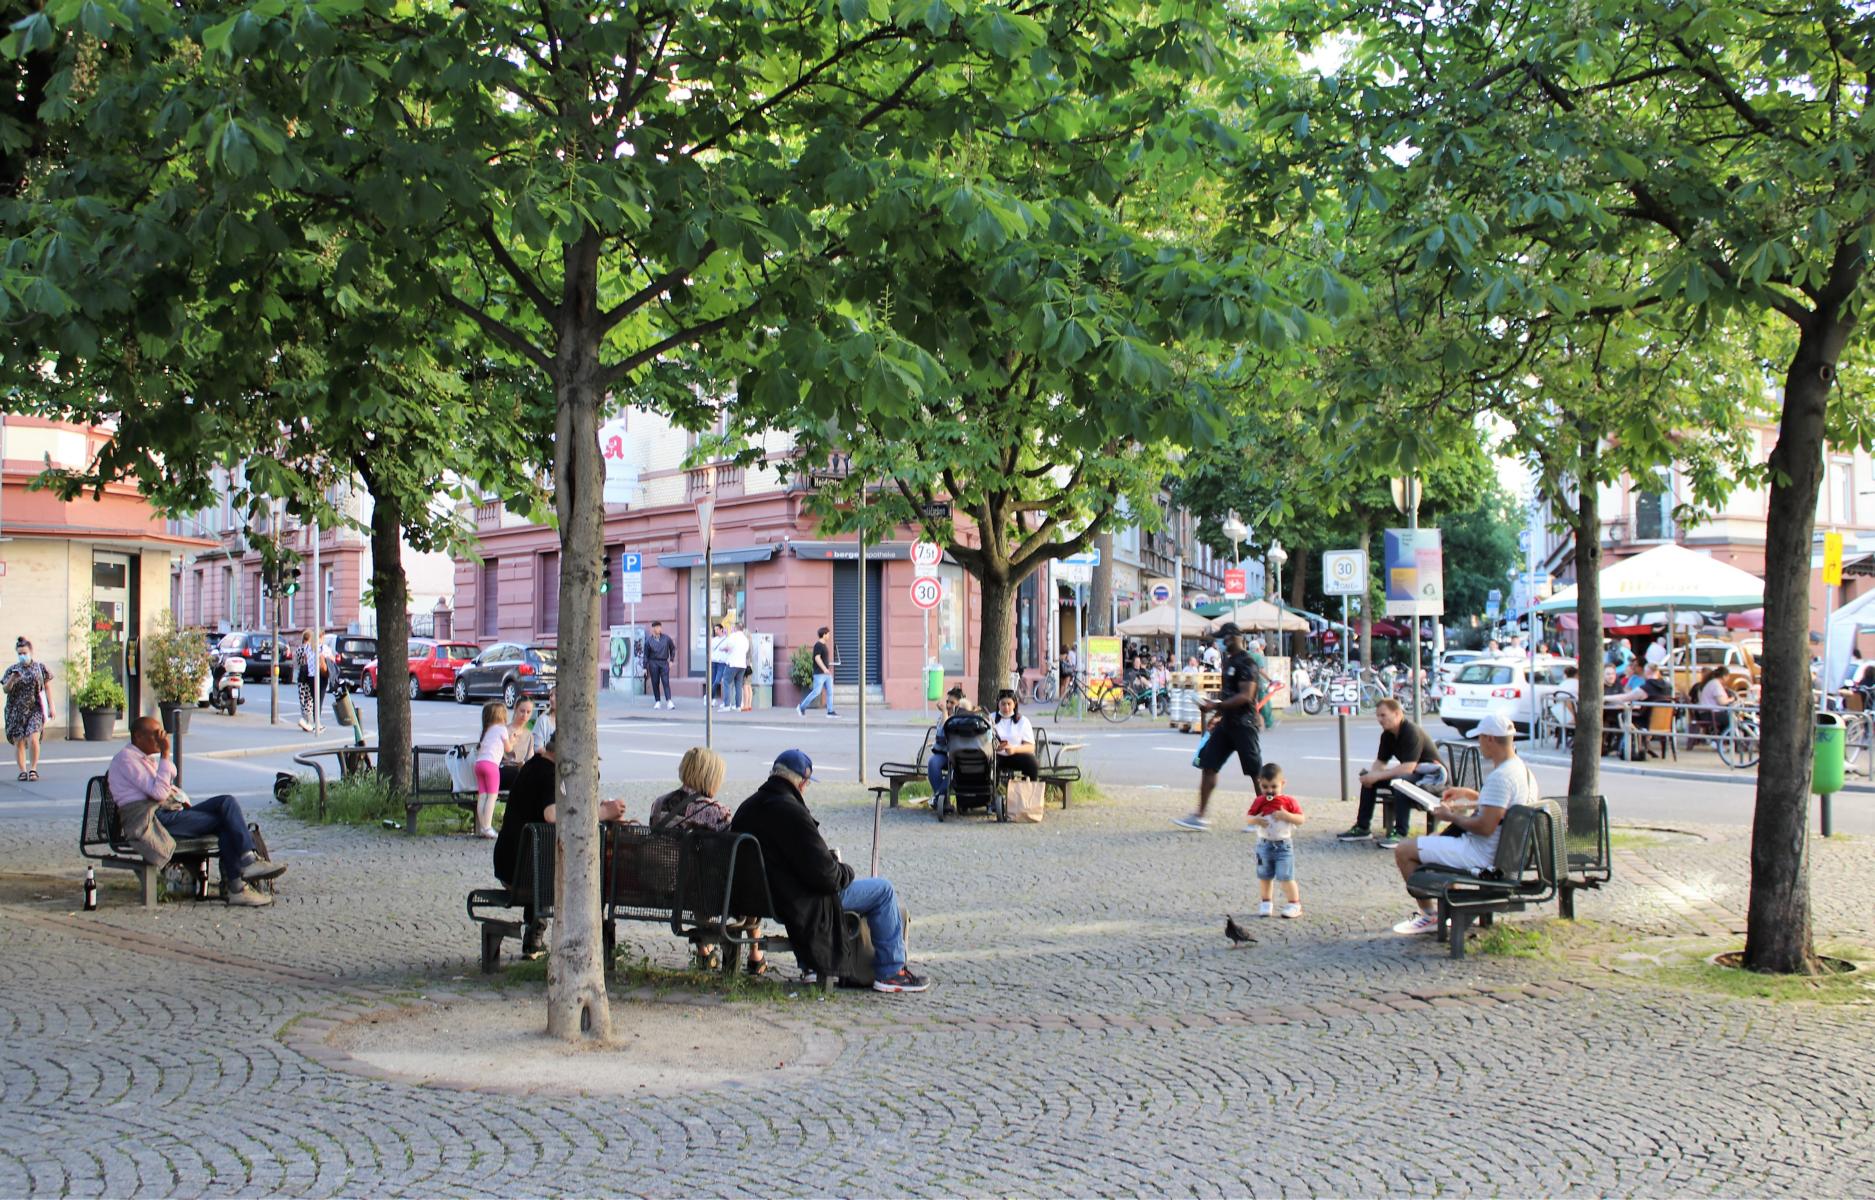  Bornheim Mitte - Fnffingerplatz